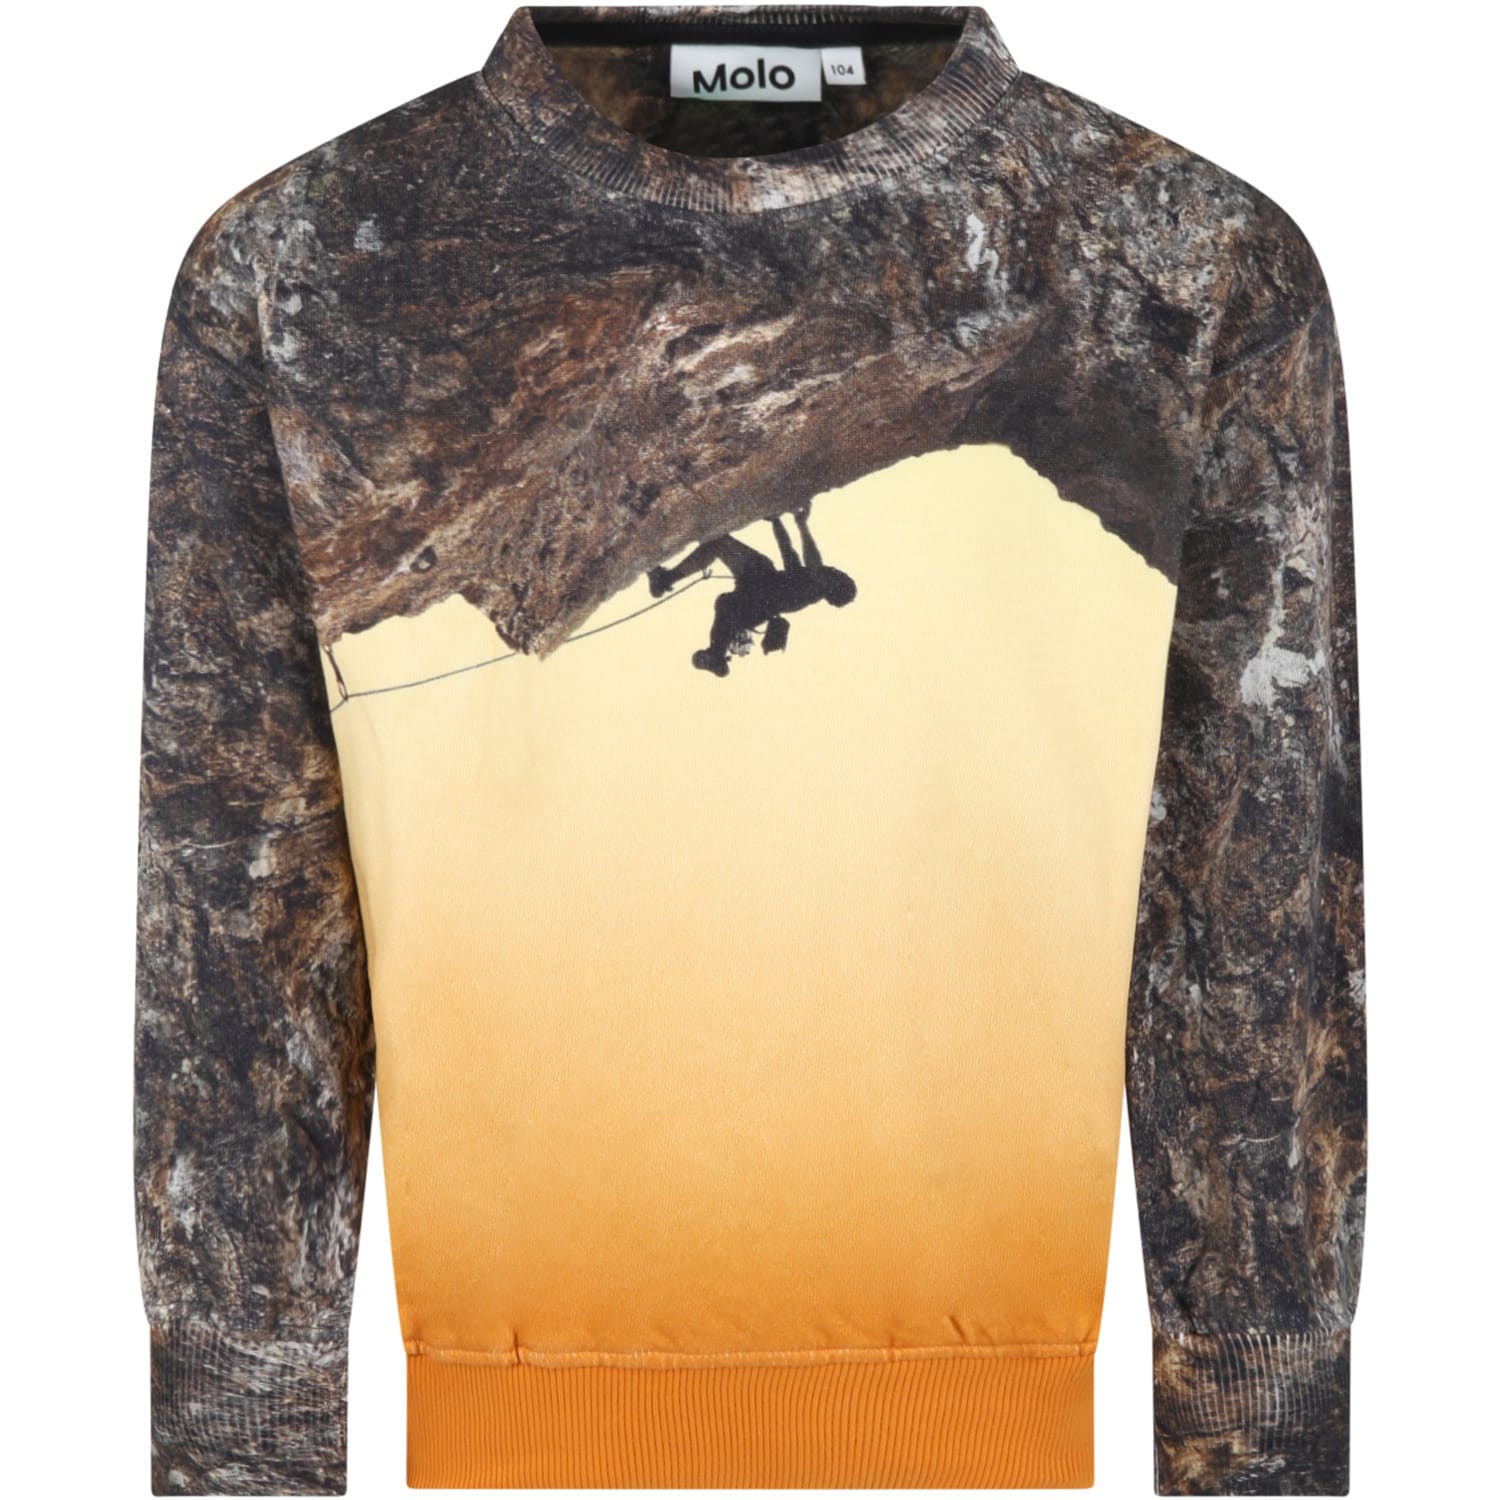 Molo Multicolor Sweatshirt For Boy With Print